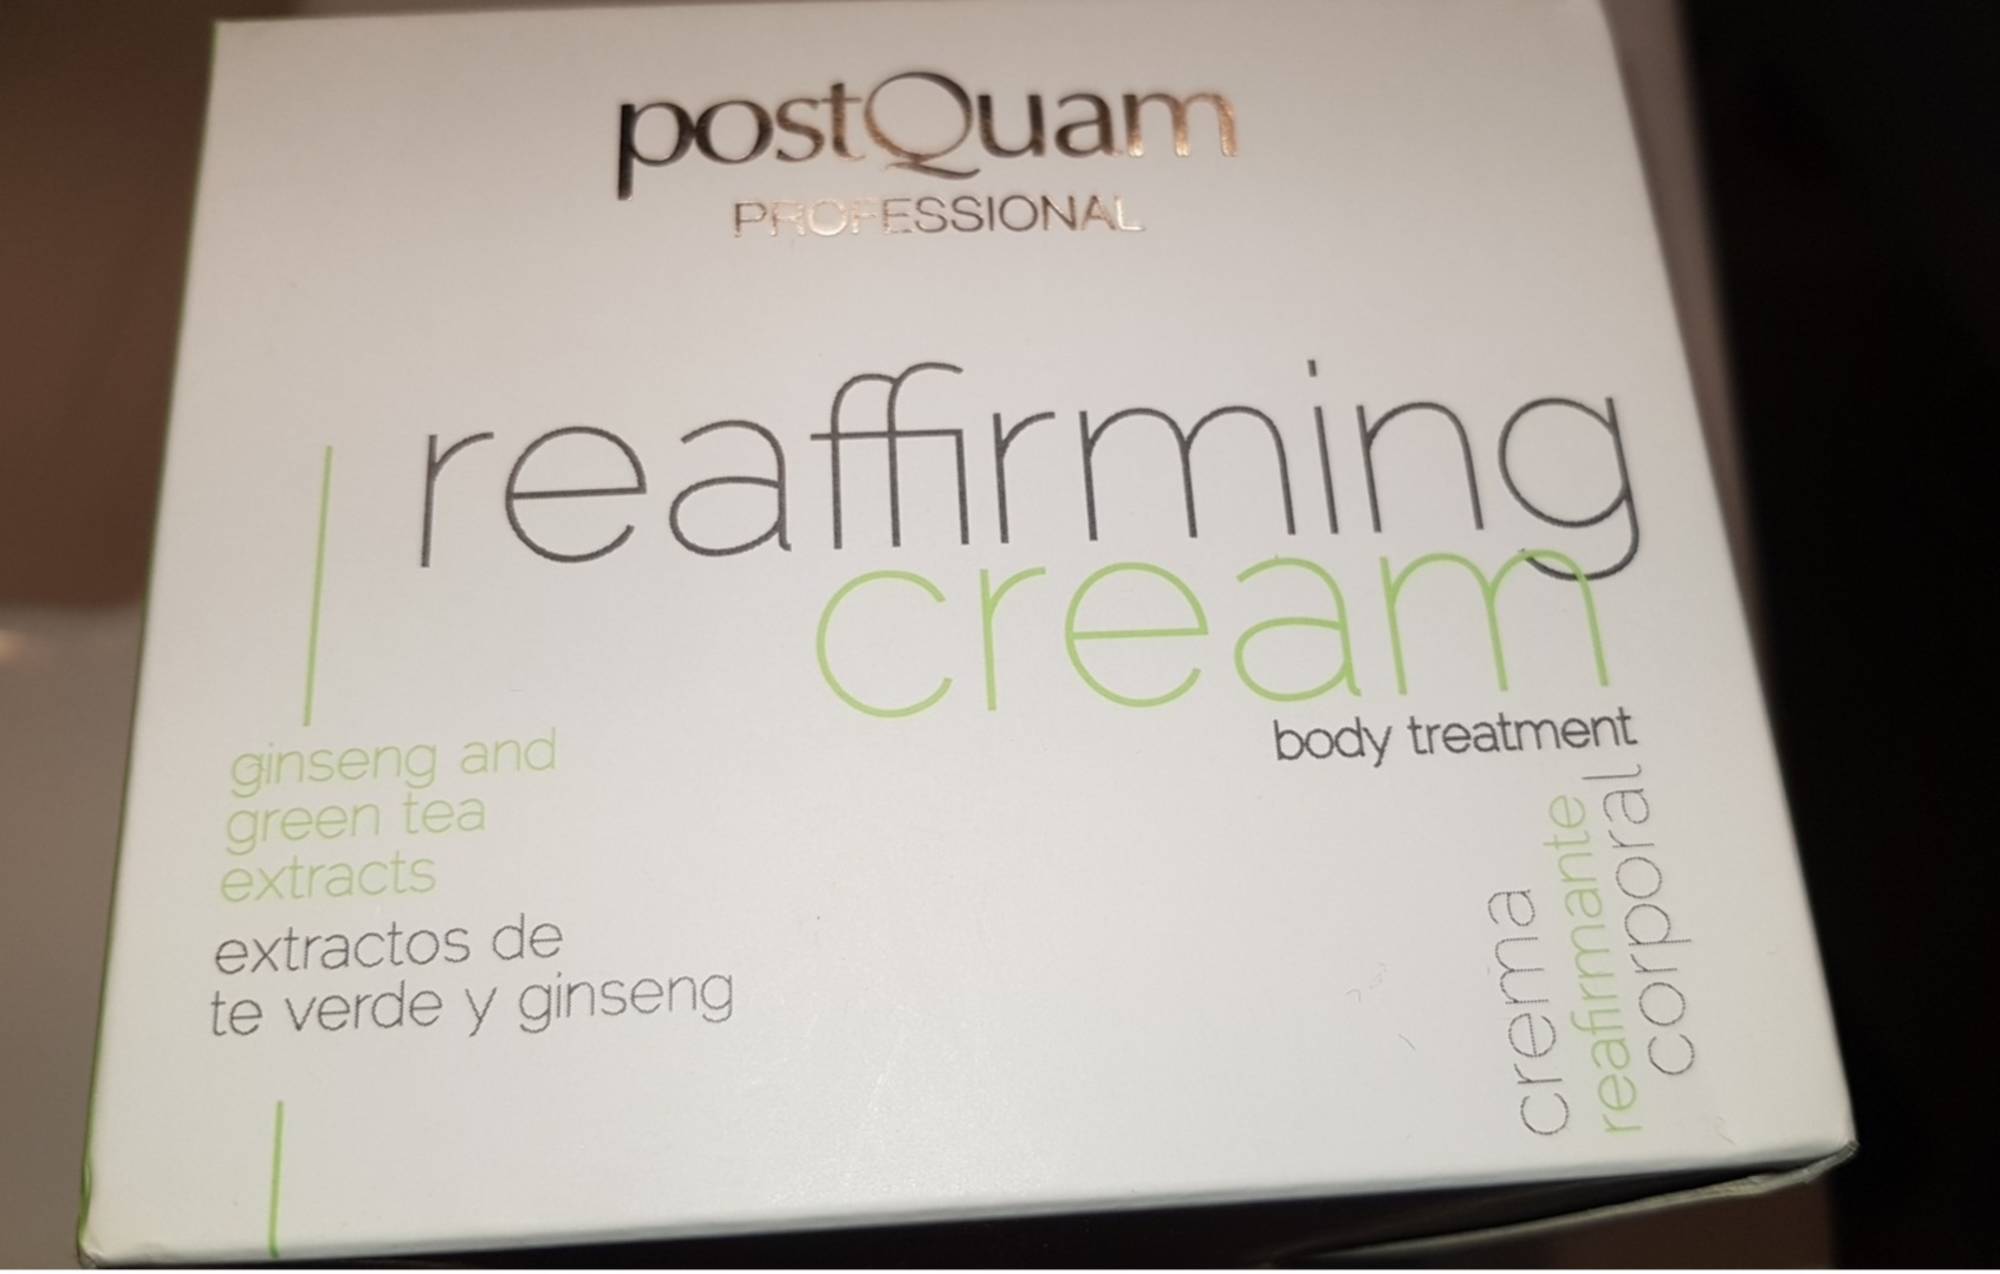 POSTQUAM PROFESSIONAL - Reaffirming cream - Body treatment